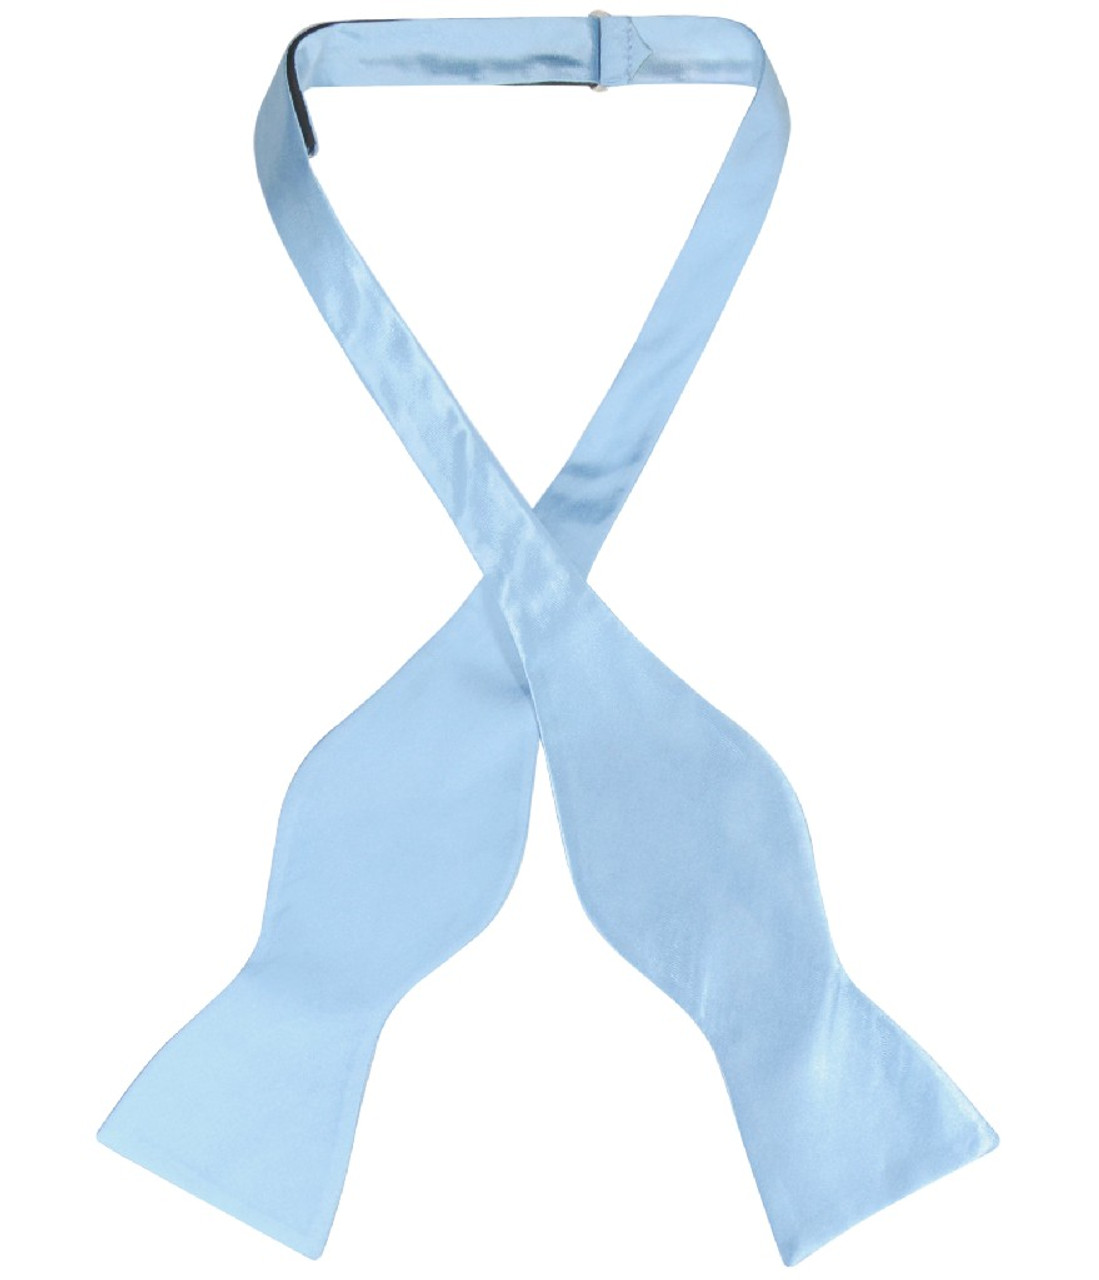 Biagio Self Tie Bow Tie Solid Baby Blue Color Mens BowTie